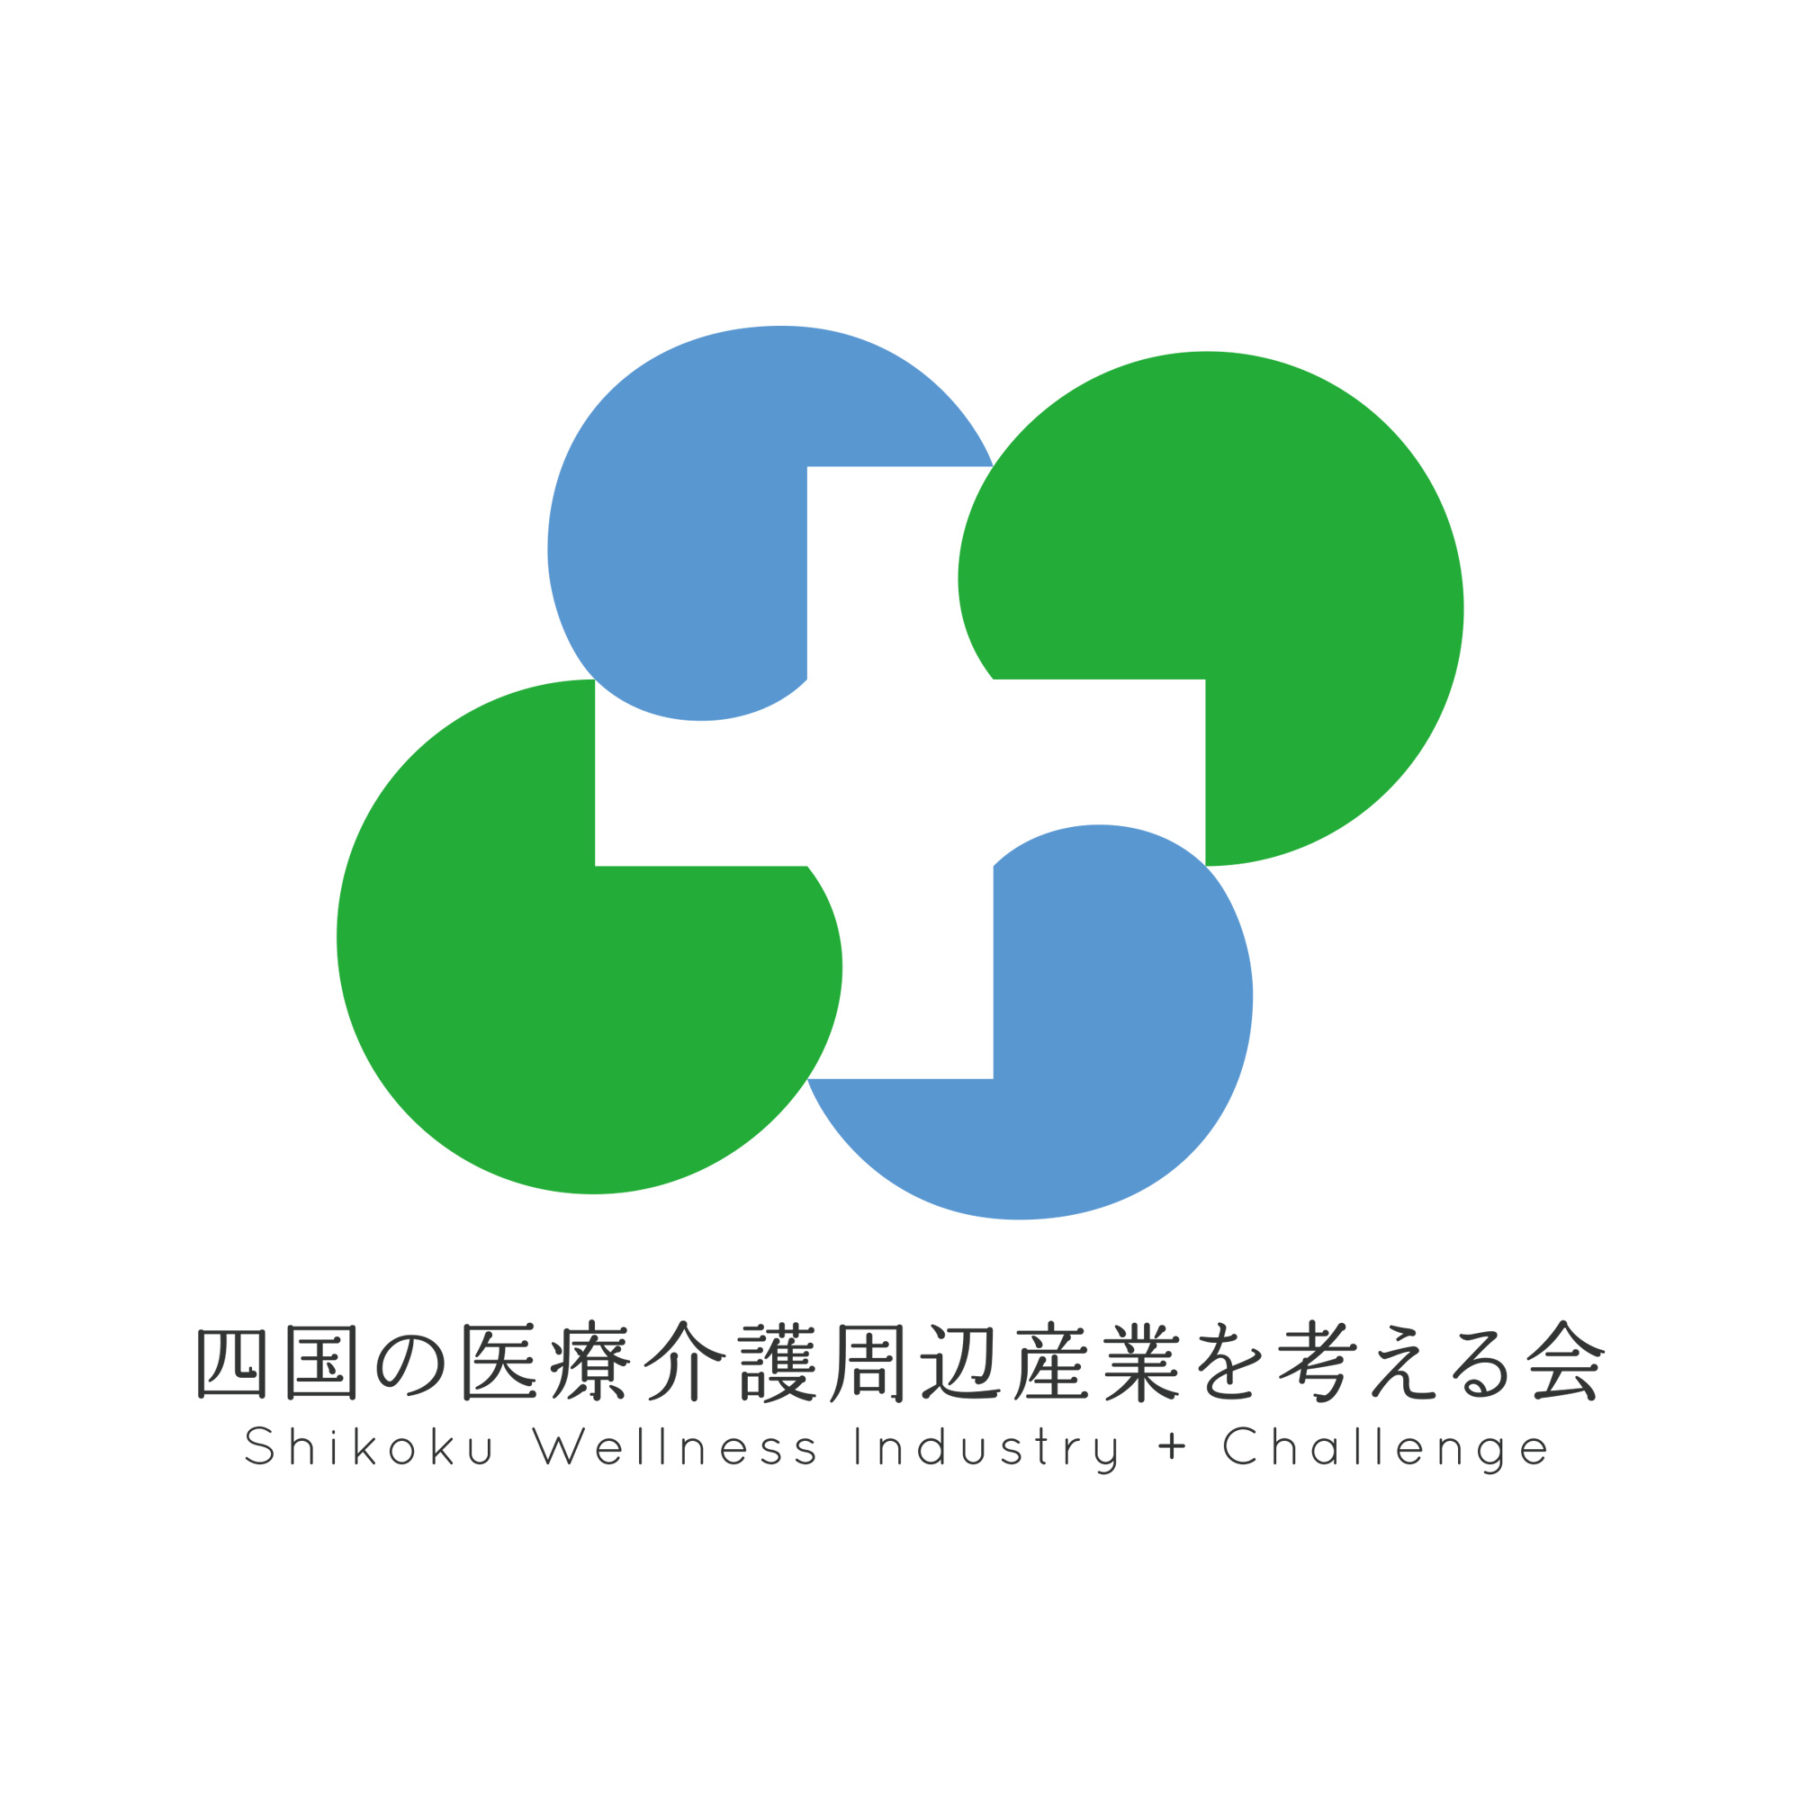 四国の医療介護周辺産業を考える会,ロゴ